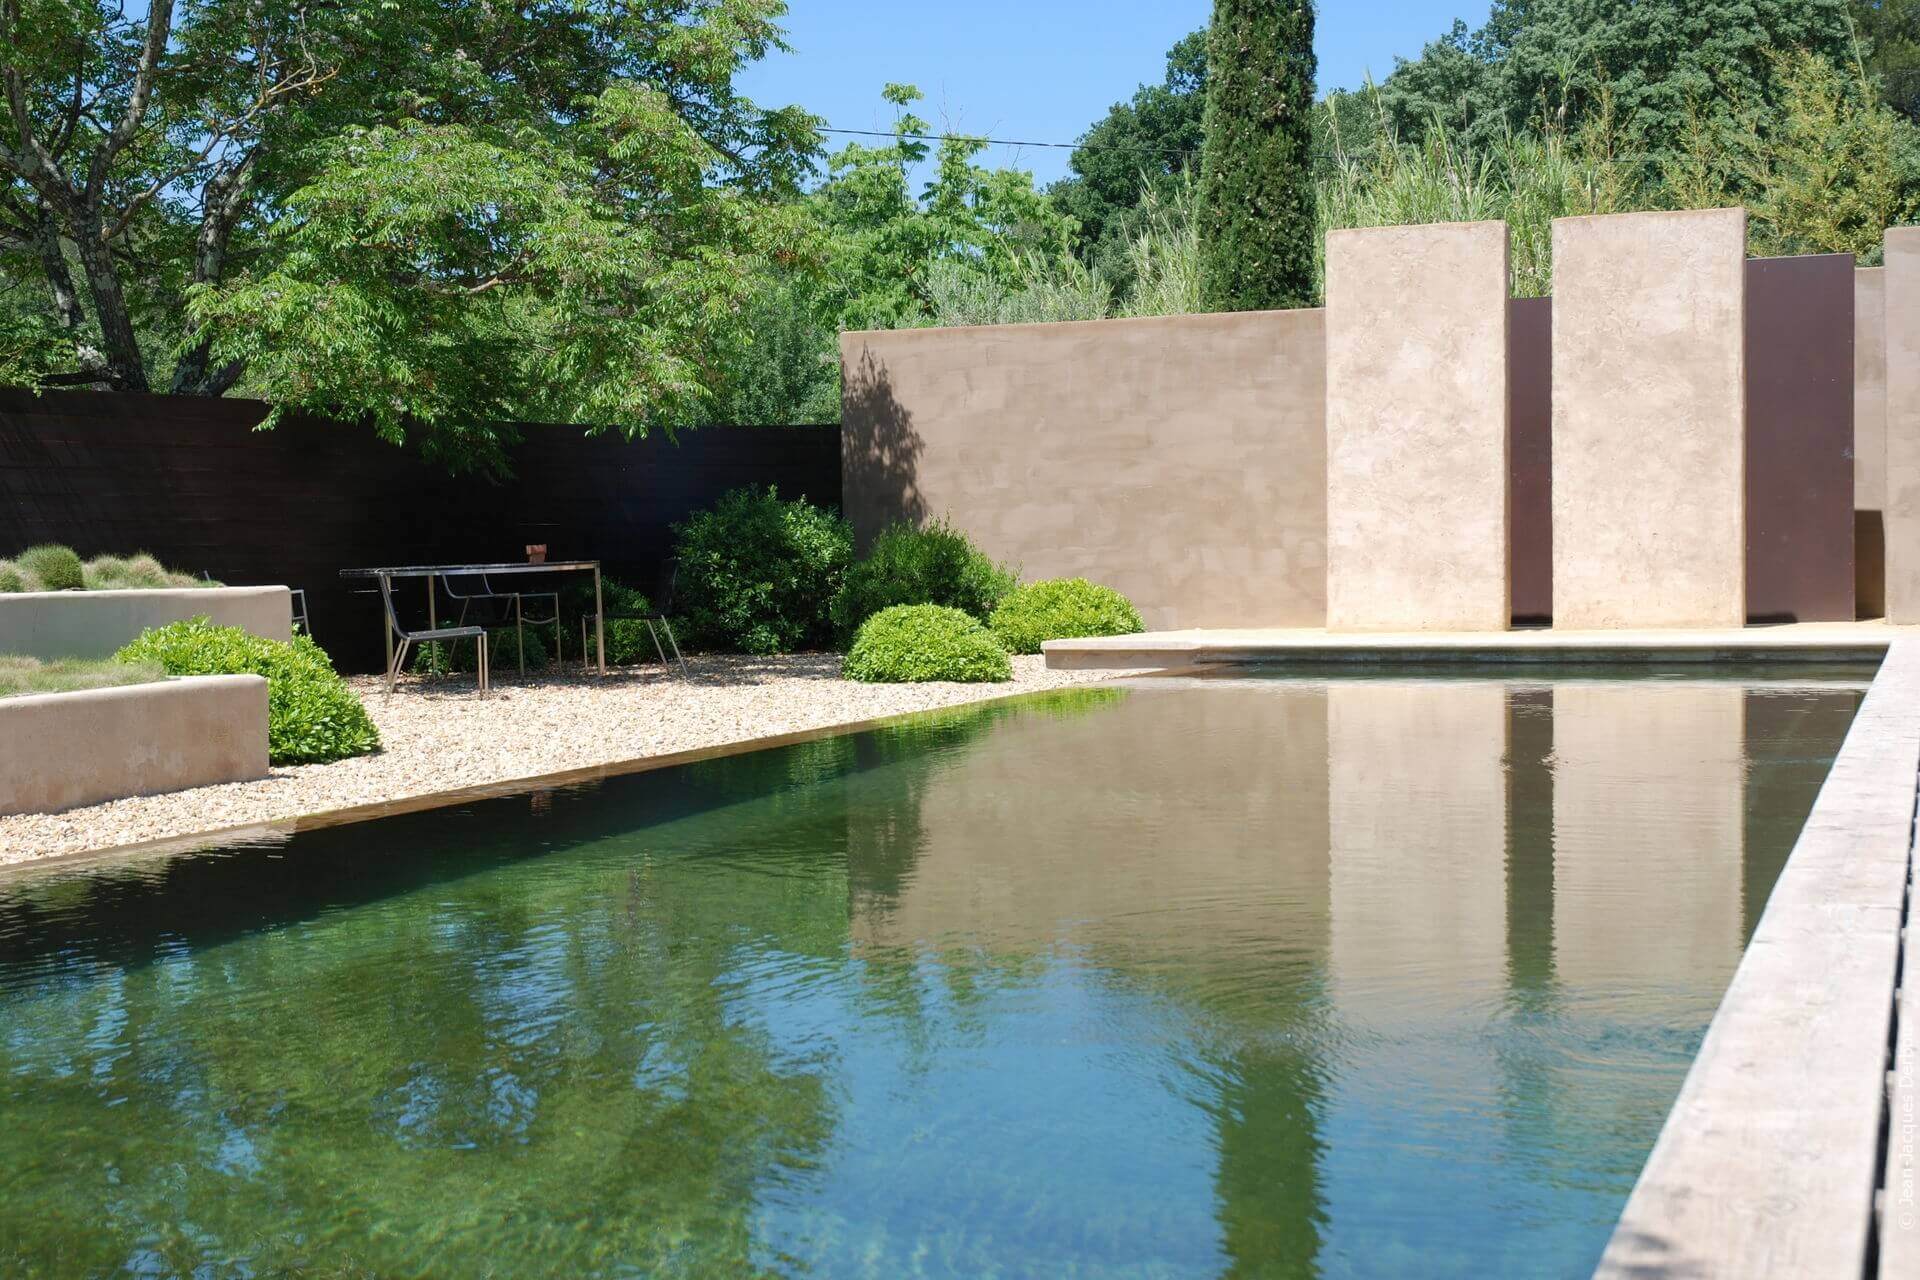 Mobilier contemporain à l’ombre, au bord de la piscine biologique, gravier, mur enduit pigment naturel.